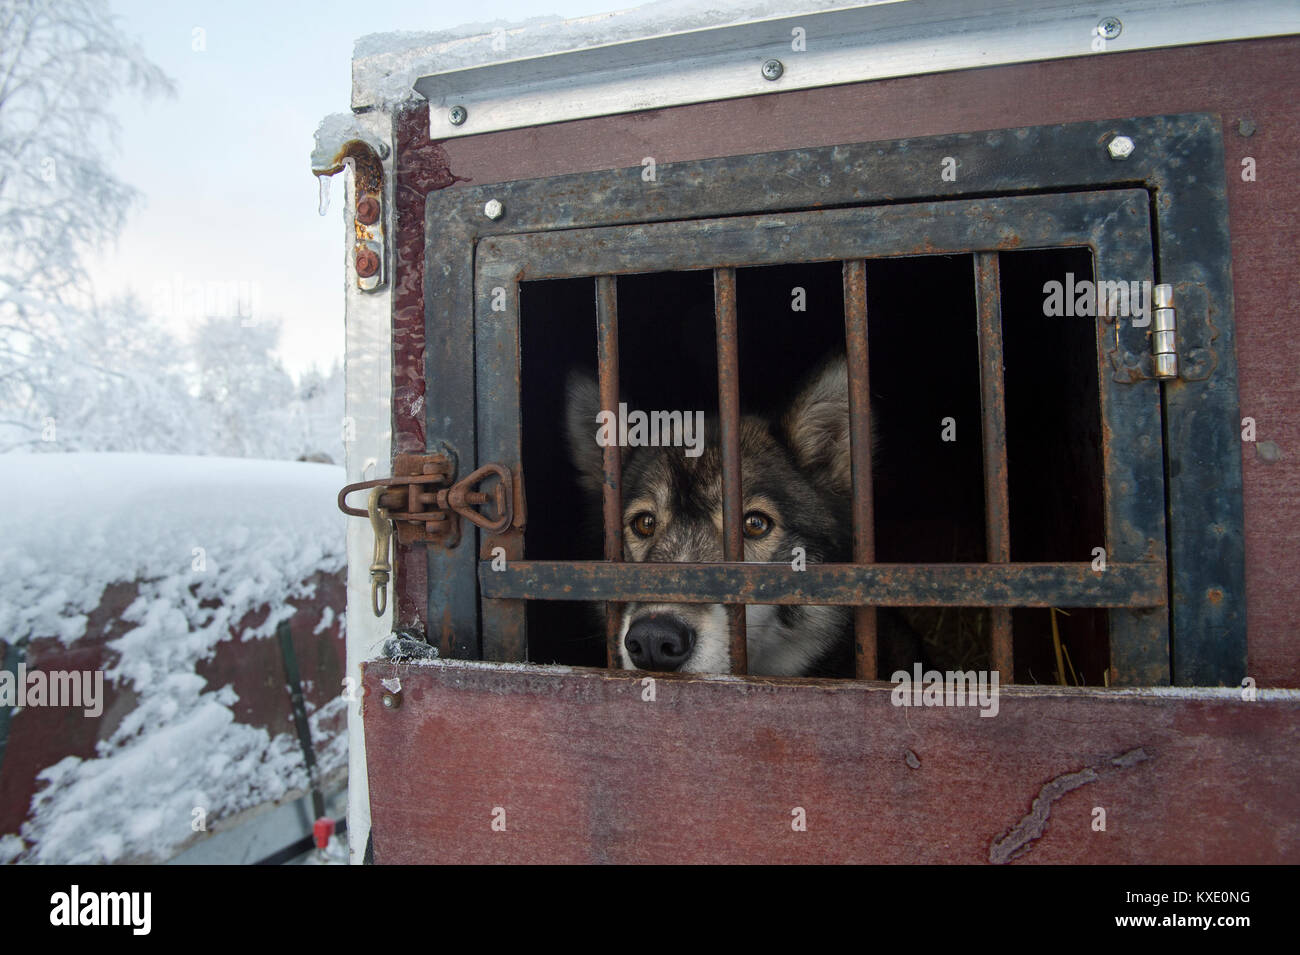 Chien de Traîneau husky de Sibérie dans une caisse prêt à travailler en Suède. Banque D'Images